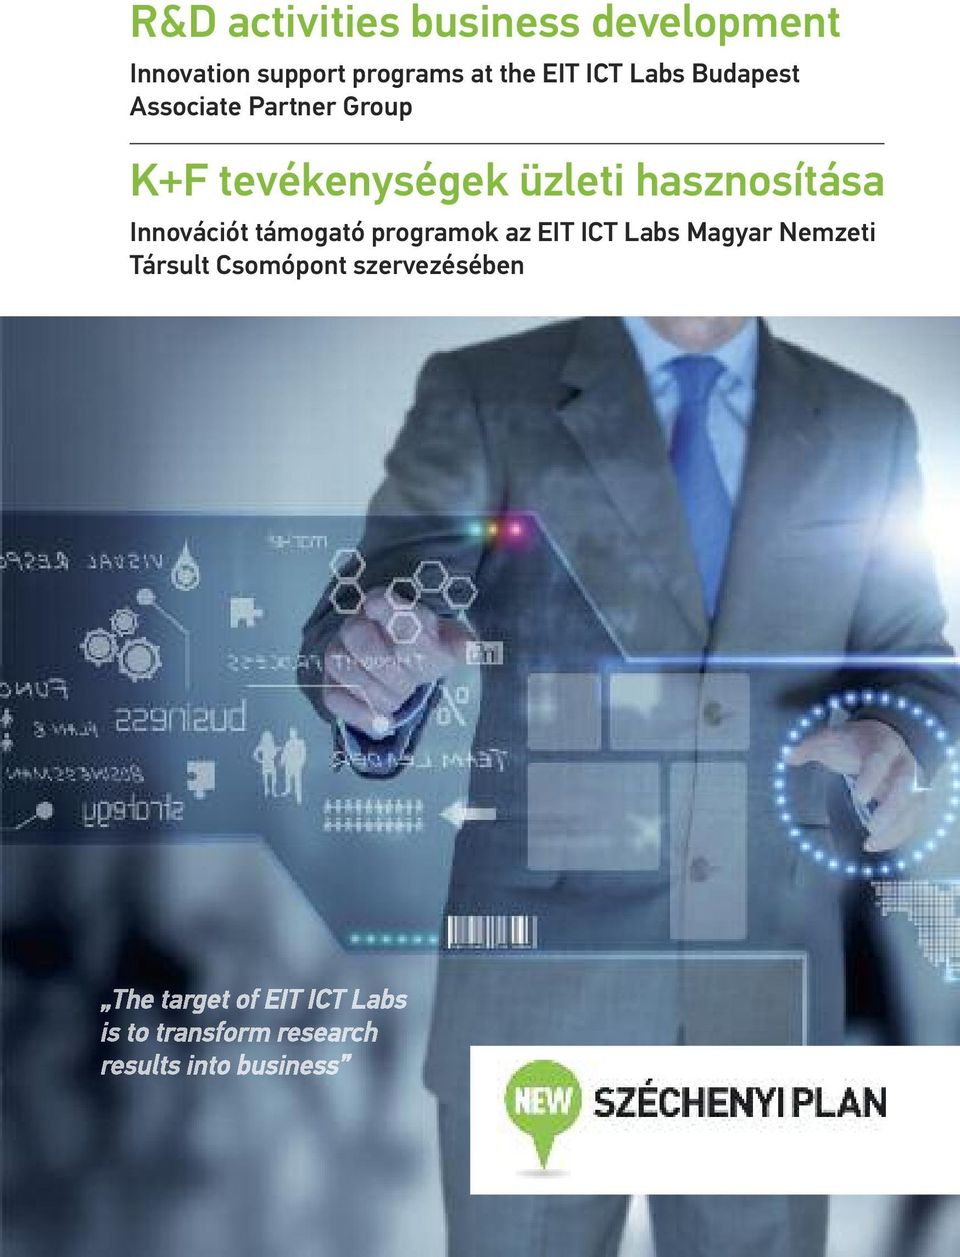 K+F tevékenységek üzleti hasznosítása Innovációt támogató